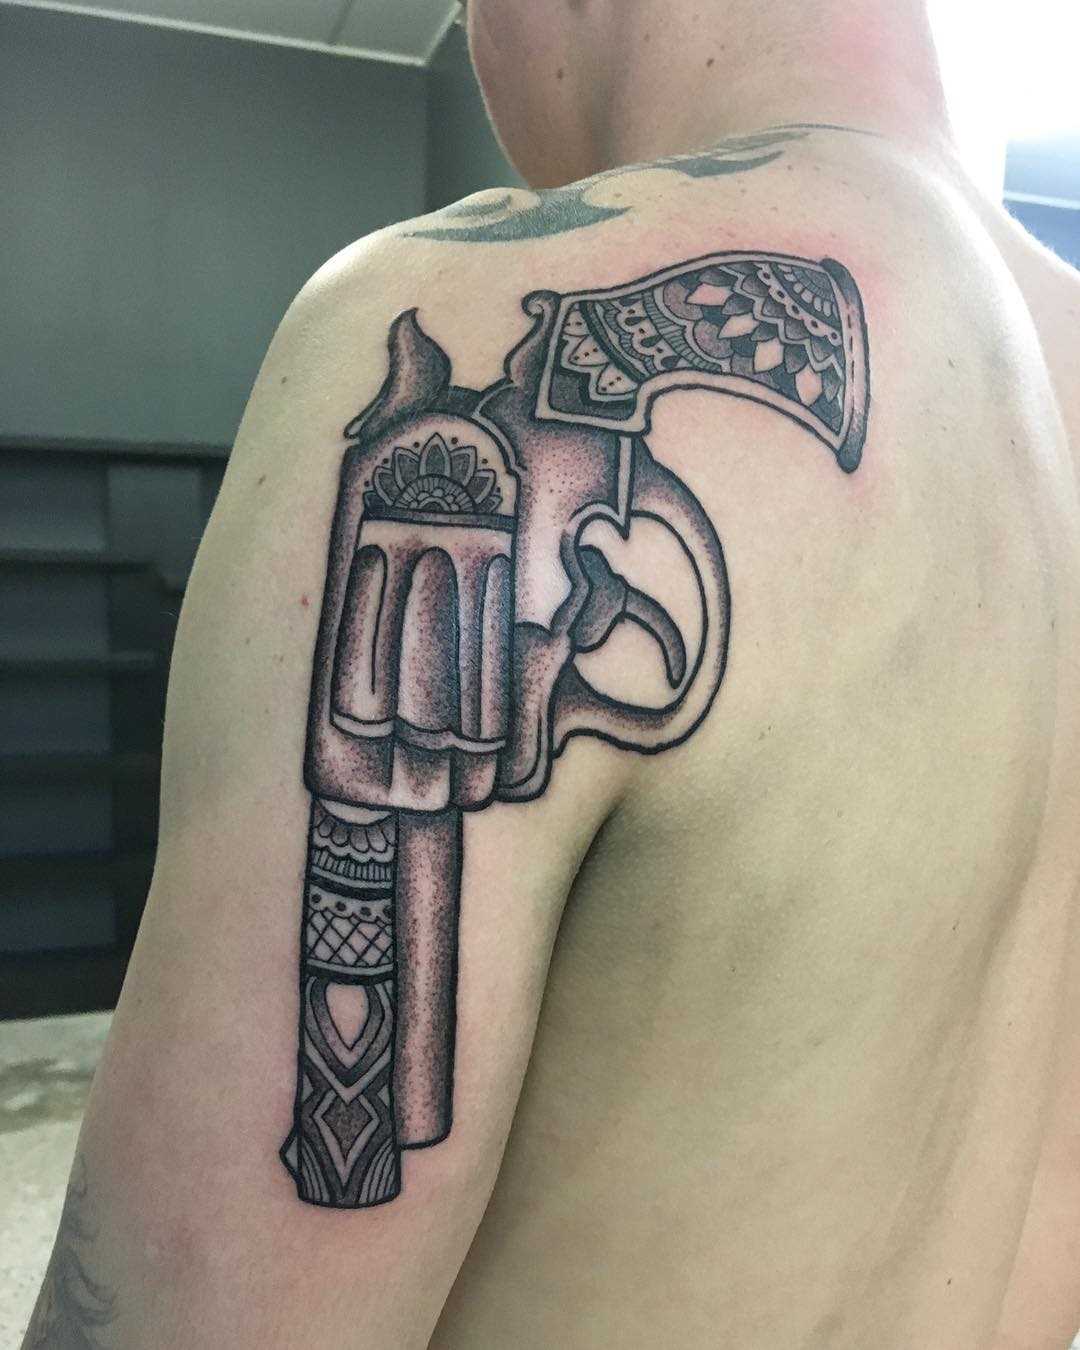 Tatuagem de revólver no ombro do cara